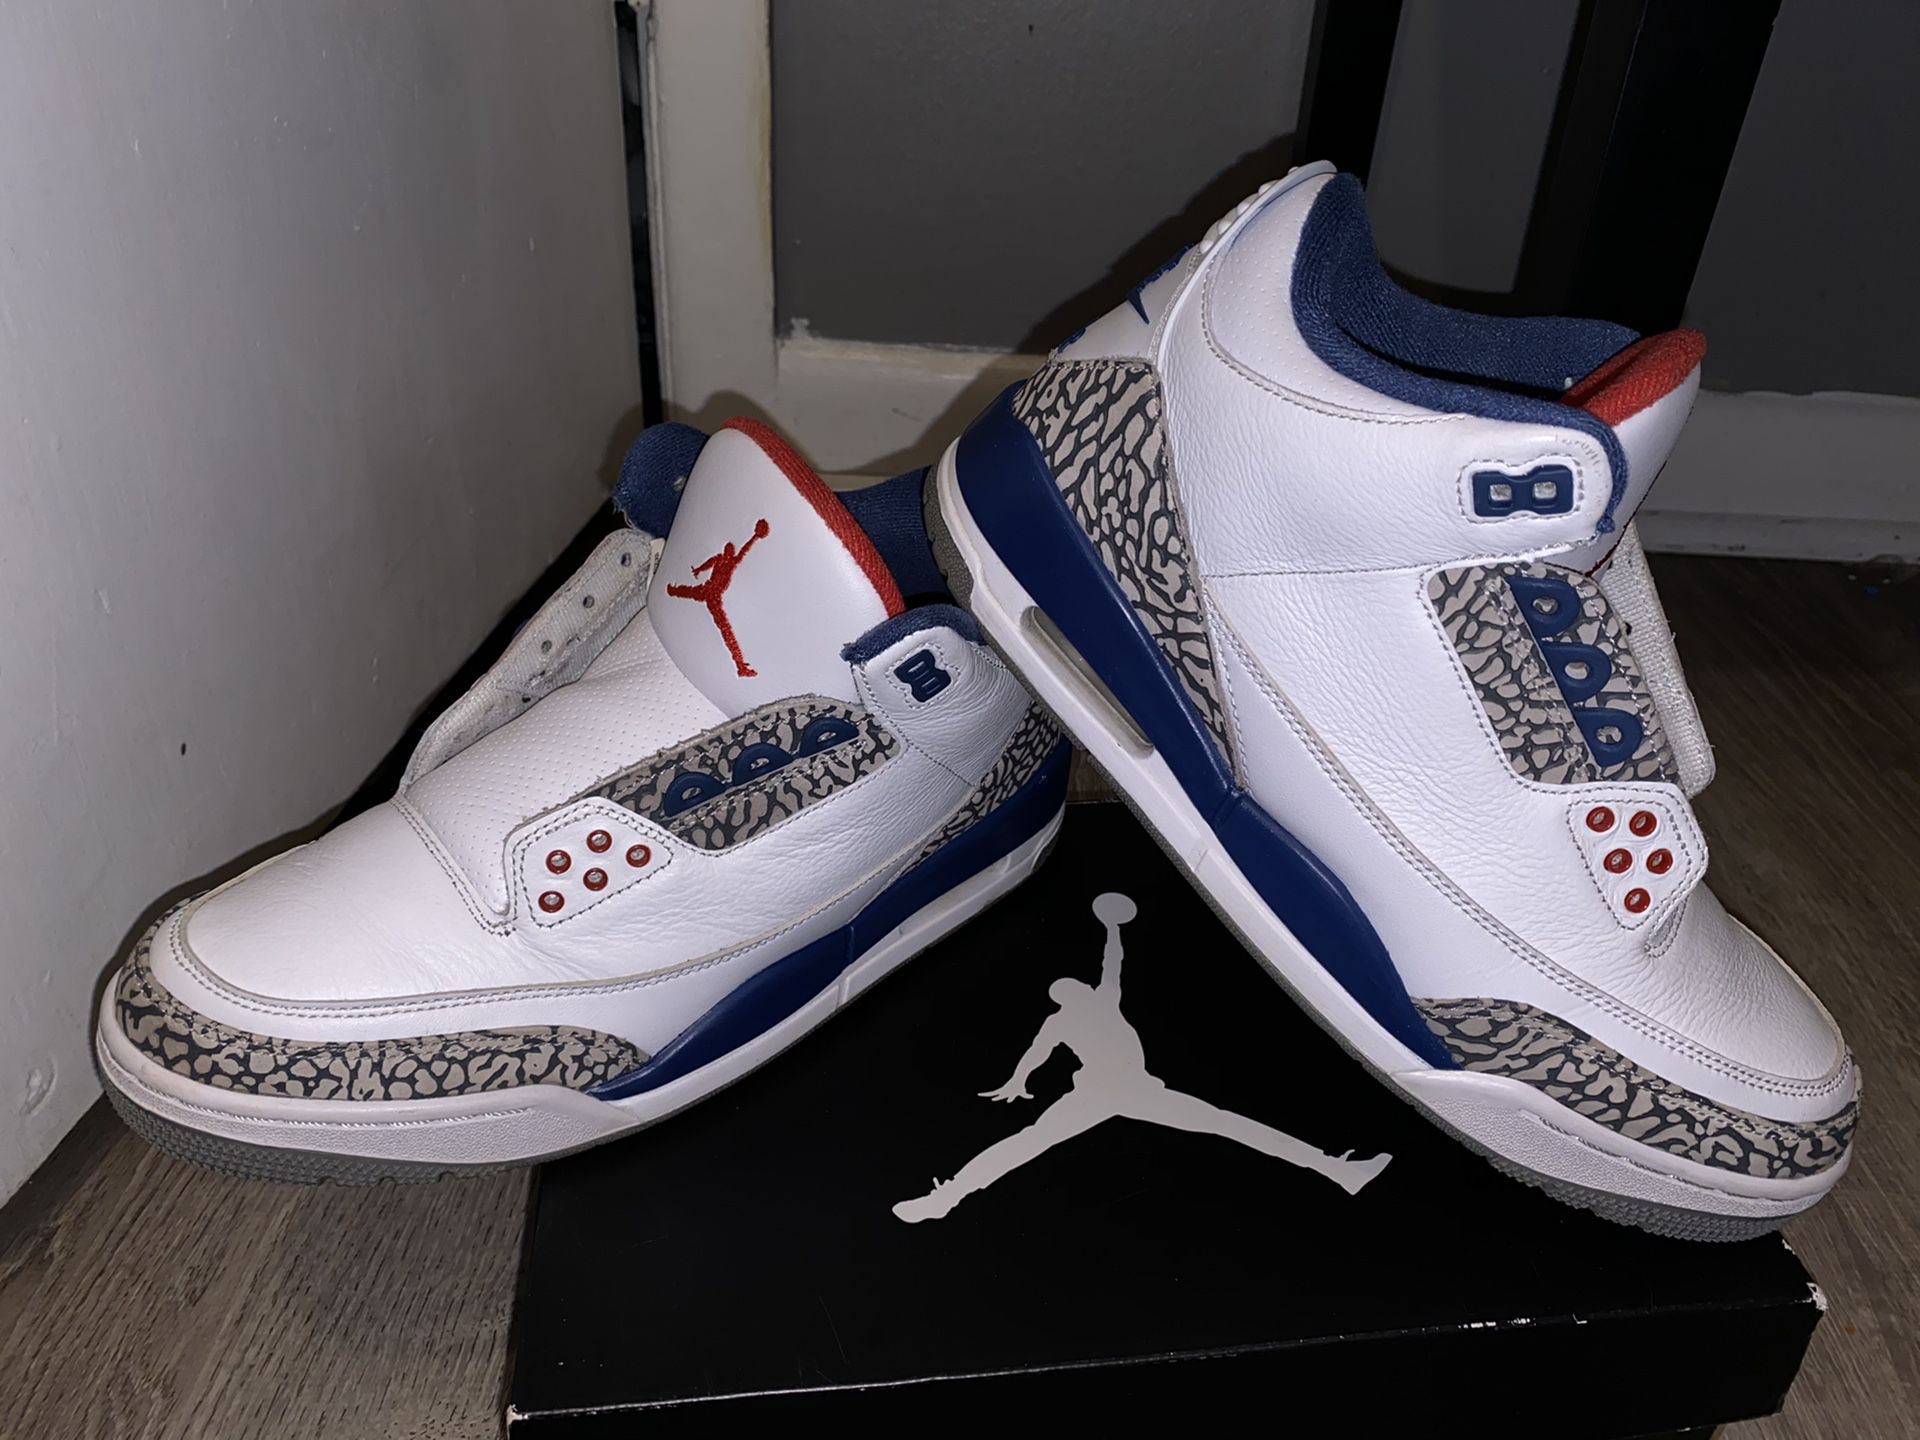 Jordan 3s true blues size 8